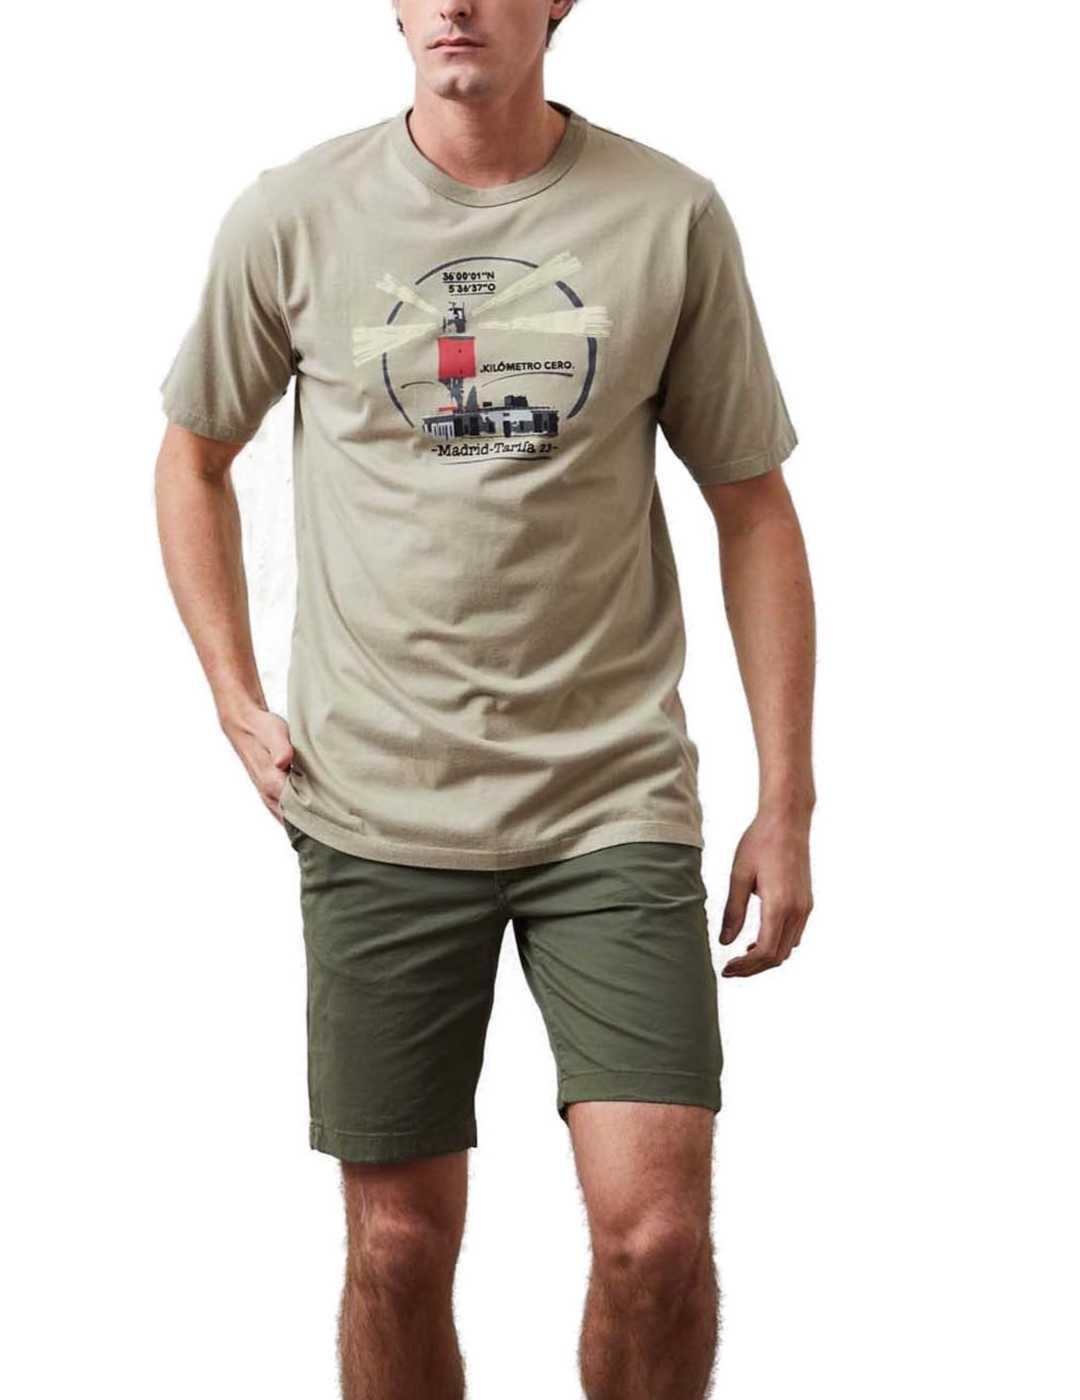 Camiseta Altonadock verde kaki km 0 manga corta hombre